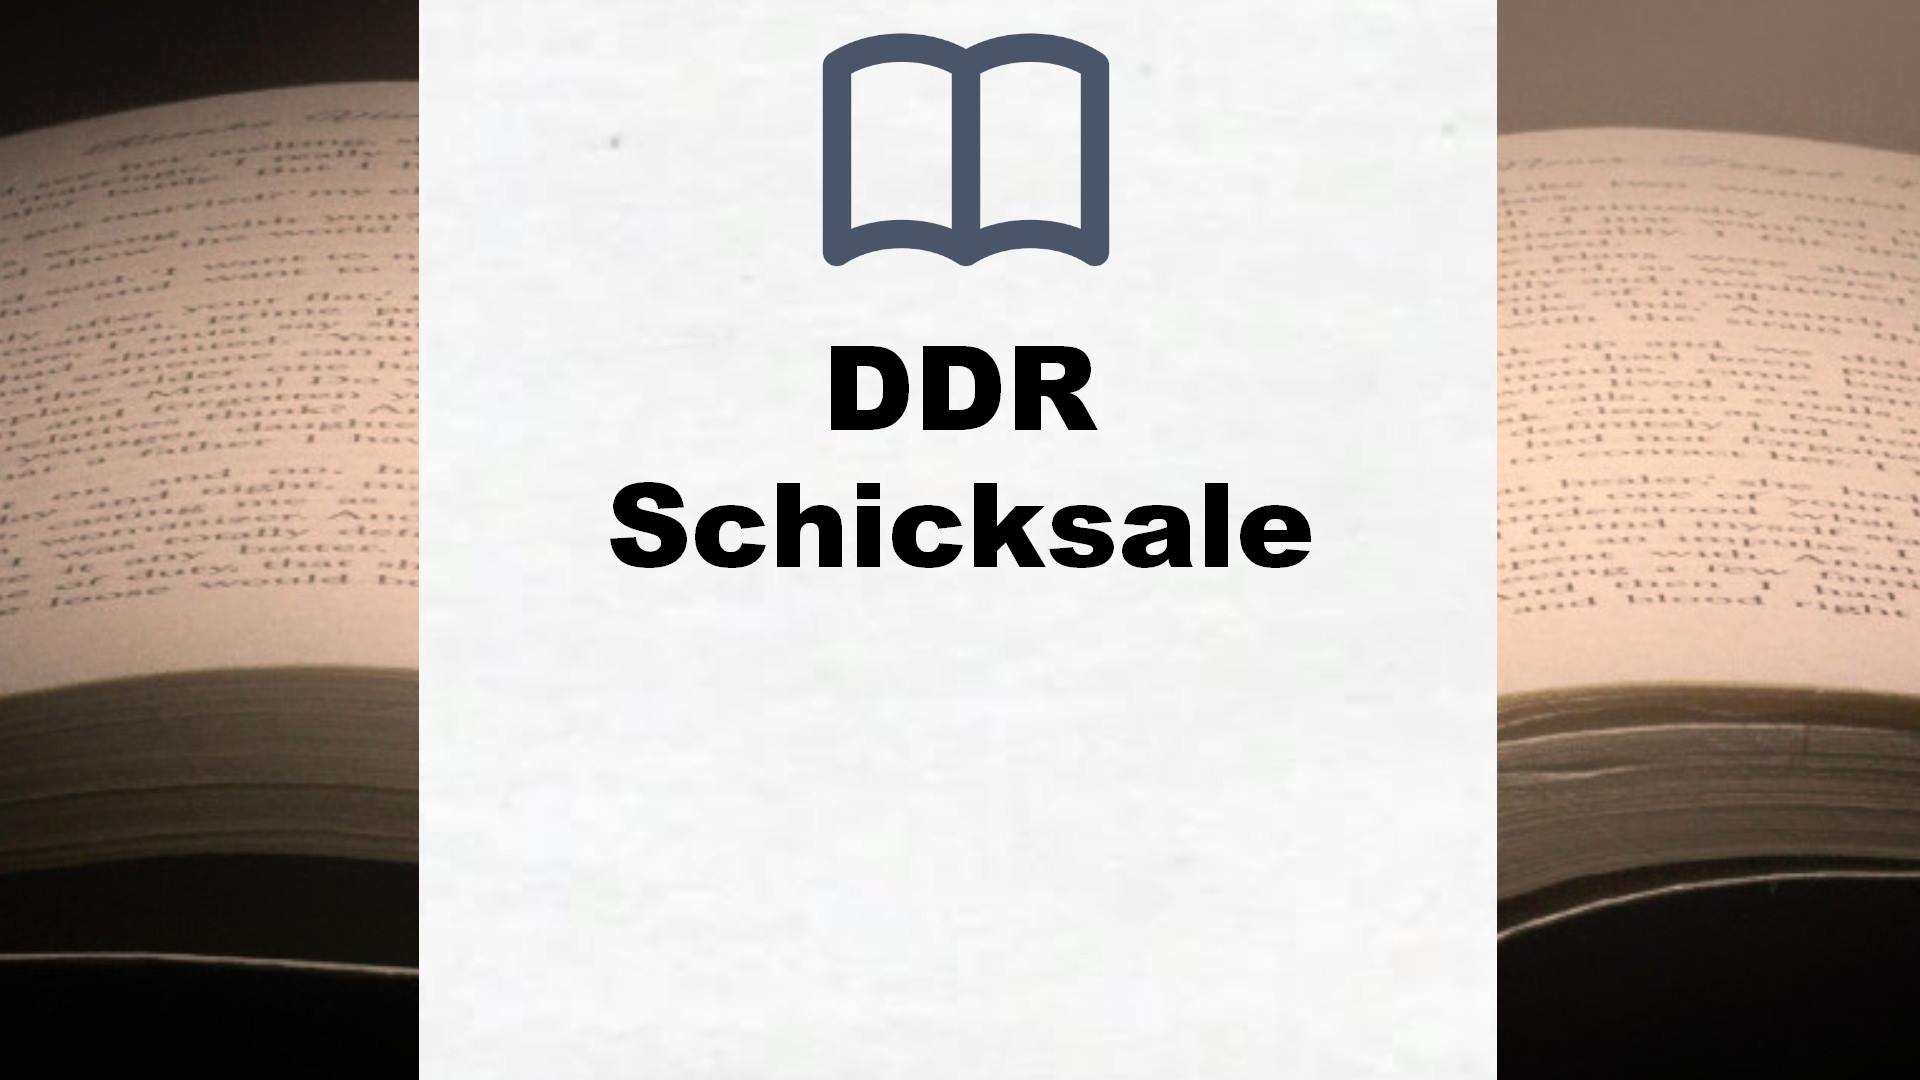 Bücher über DDR Schicksale